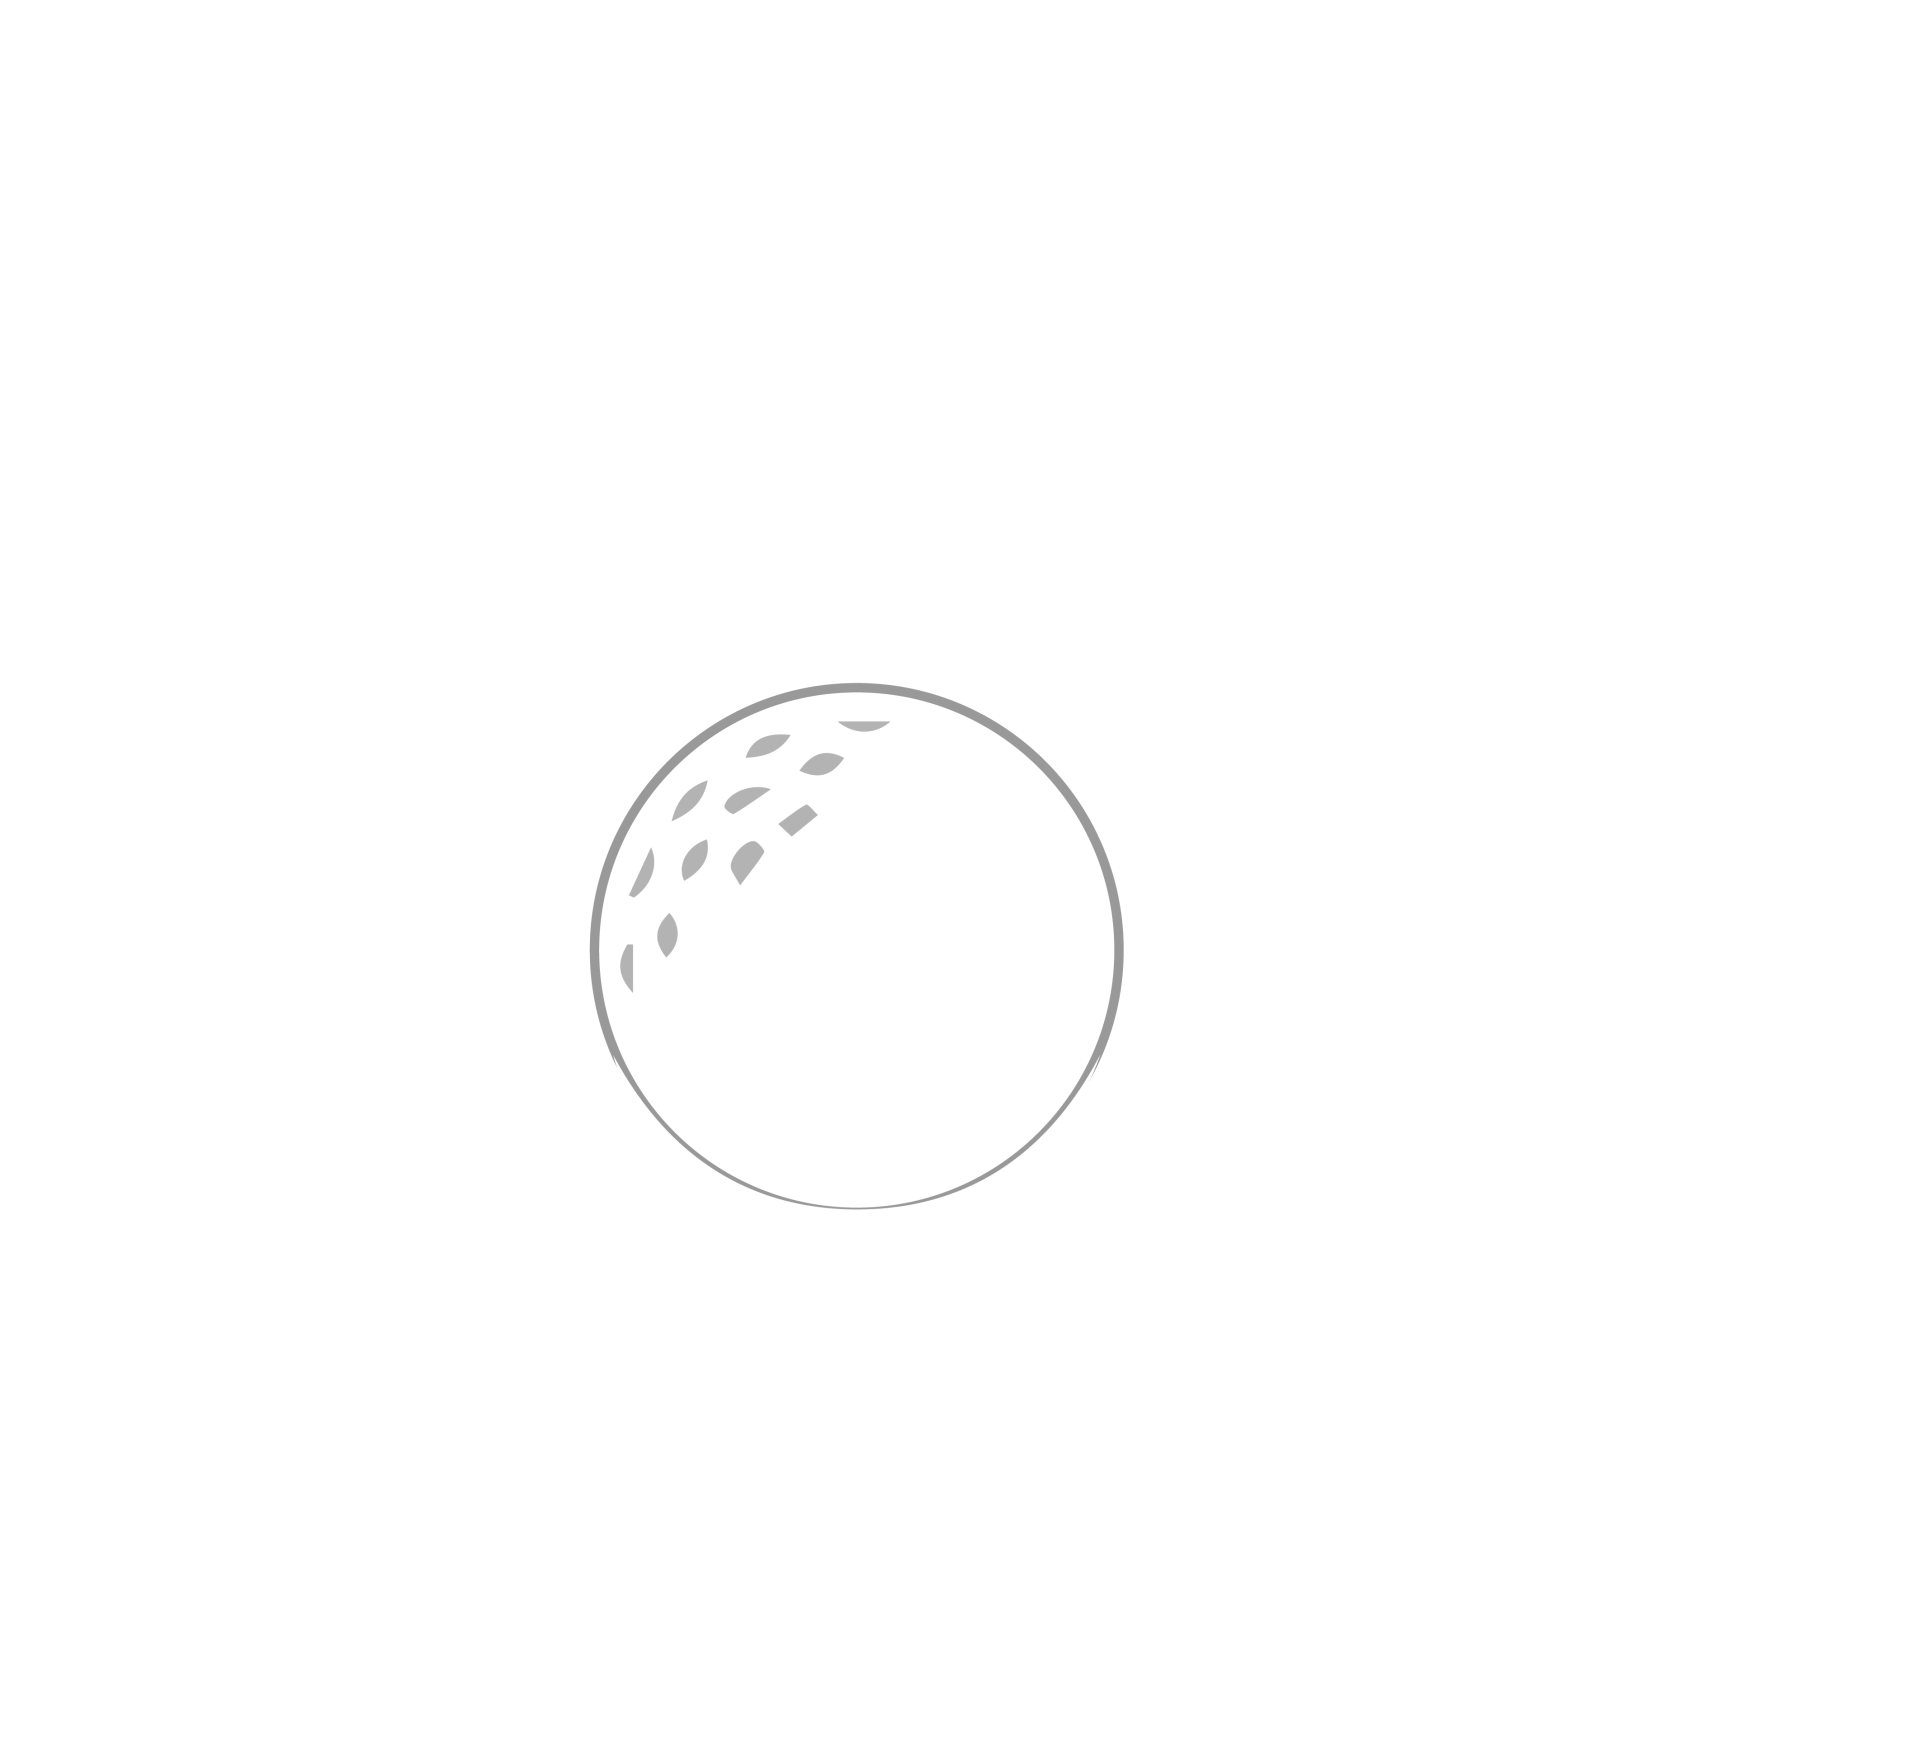 Solent Meads Golf Center negative logo